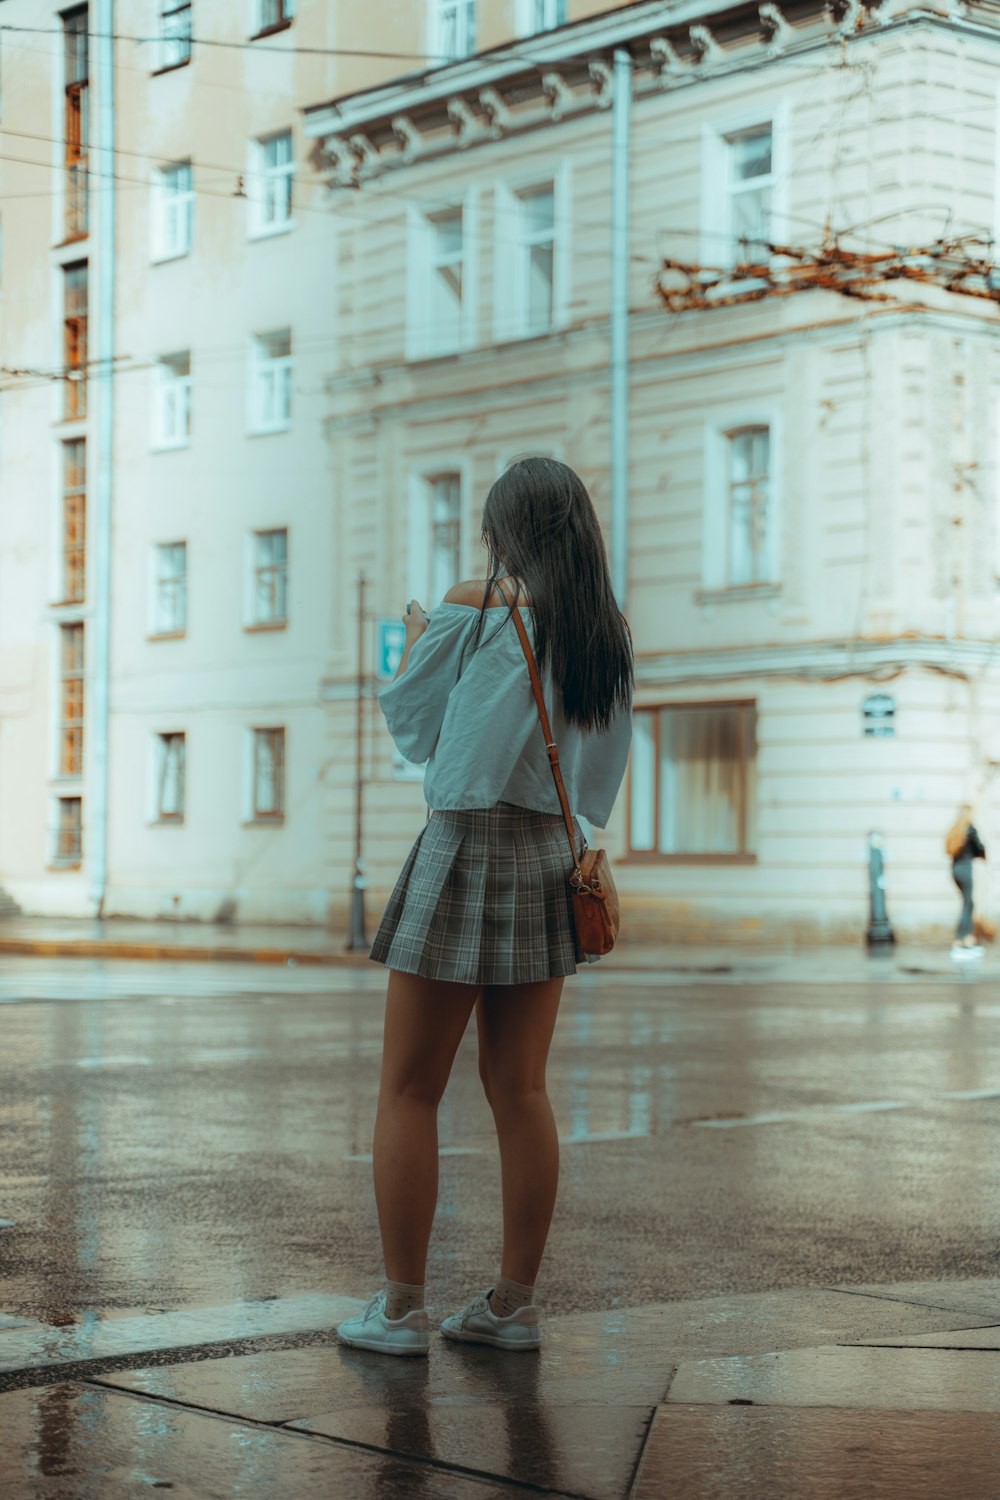 Donna in camicia grigia a maniche lunghe e gonna a quadri in bianco e nero  che cammina sul marciapiede durante foto – Grigio Immagine gratuita su  Unsplash